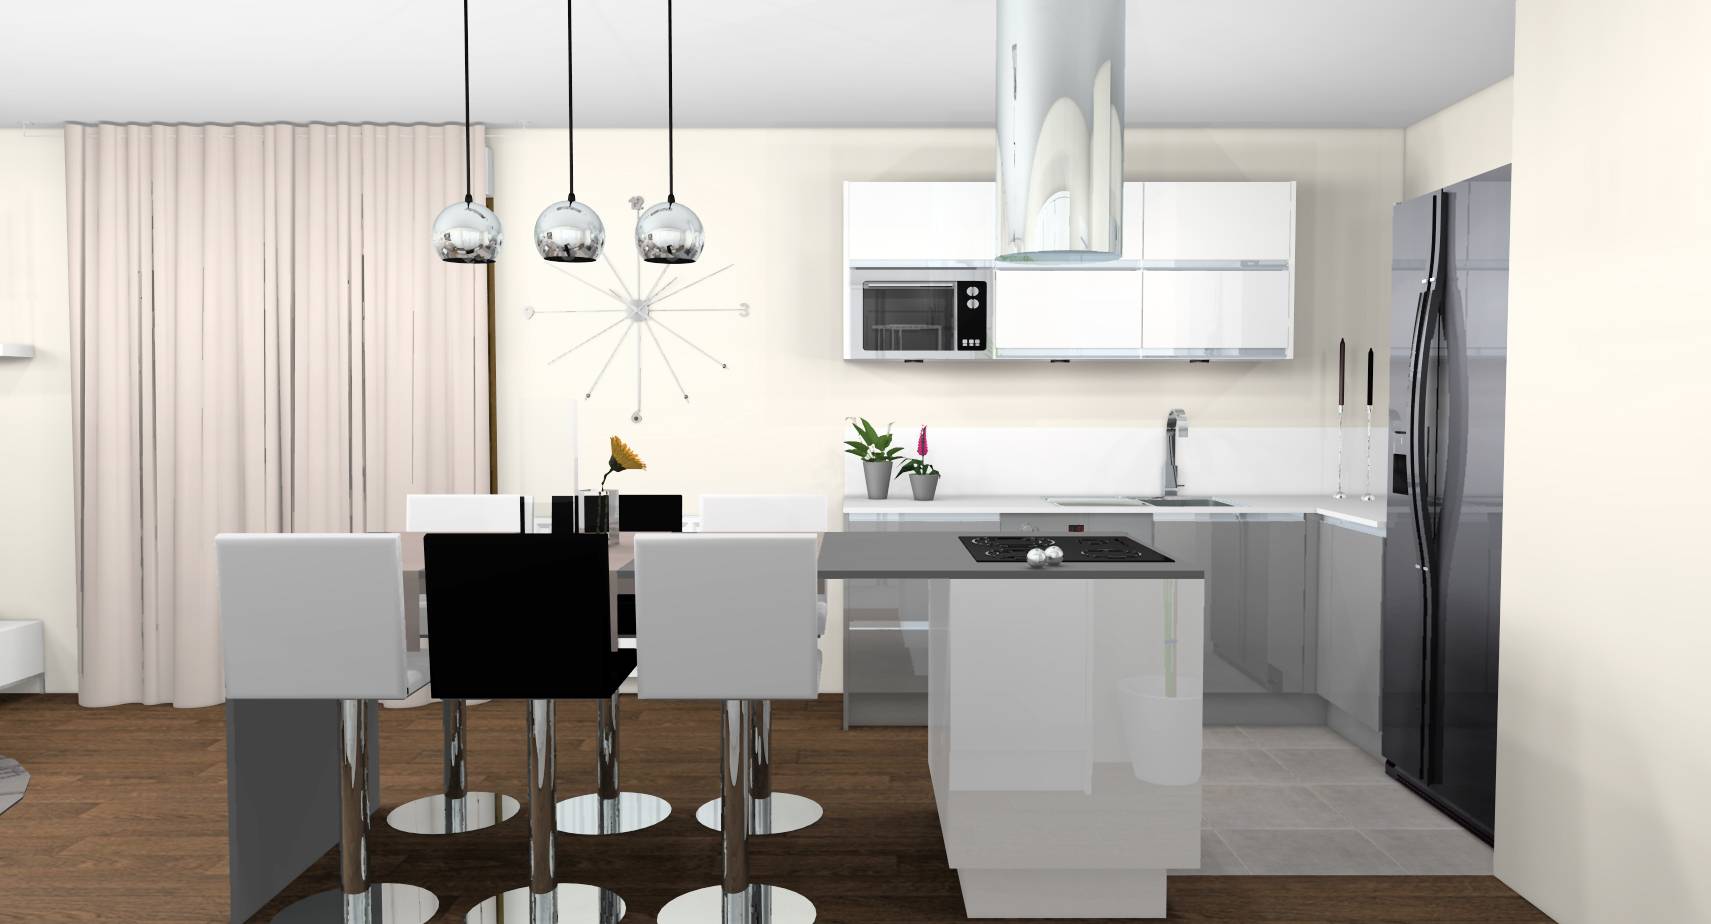 sejour-cuisine-ouverte-murs-lin-mobilier-laque-blanc-gris-plan-de-travail-credence-quartz-ilot-central-1b